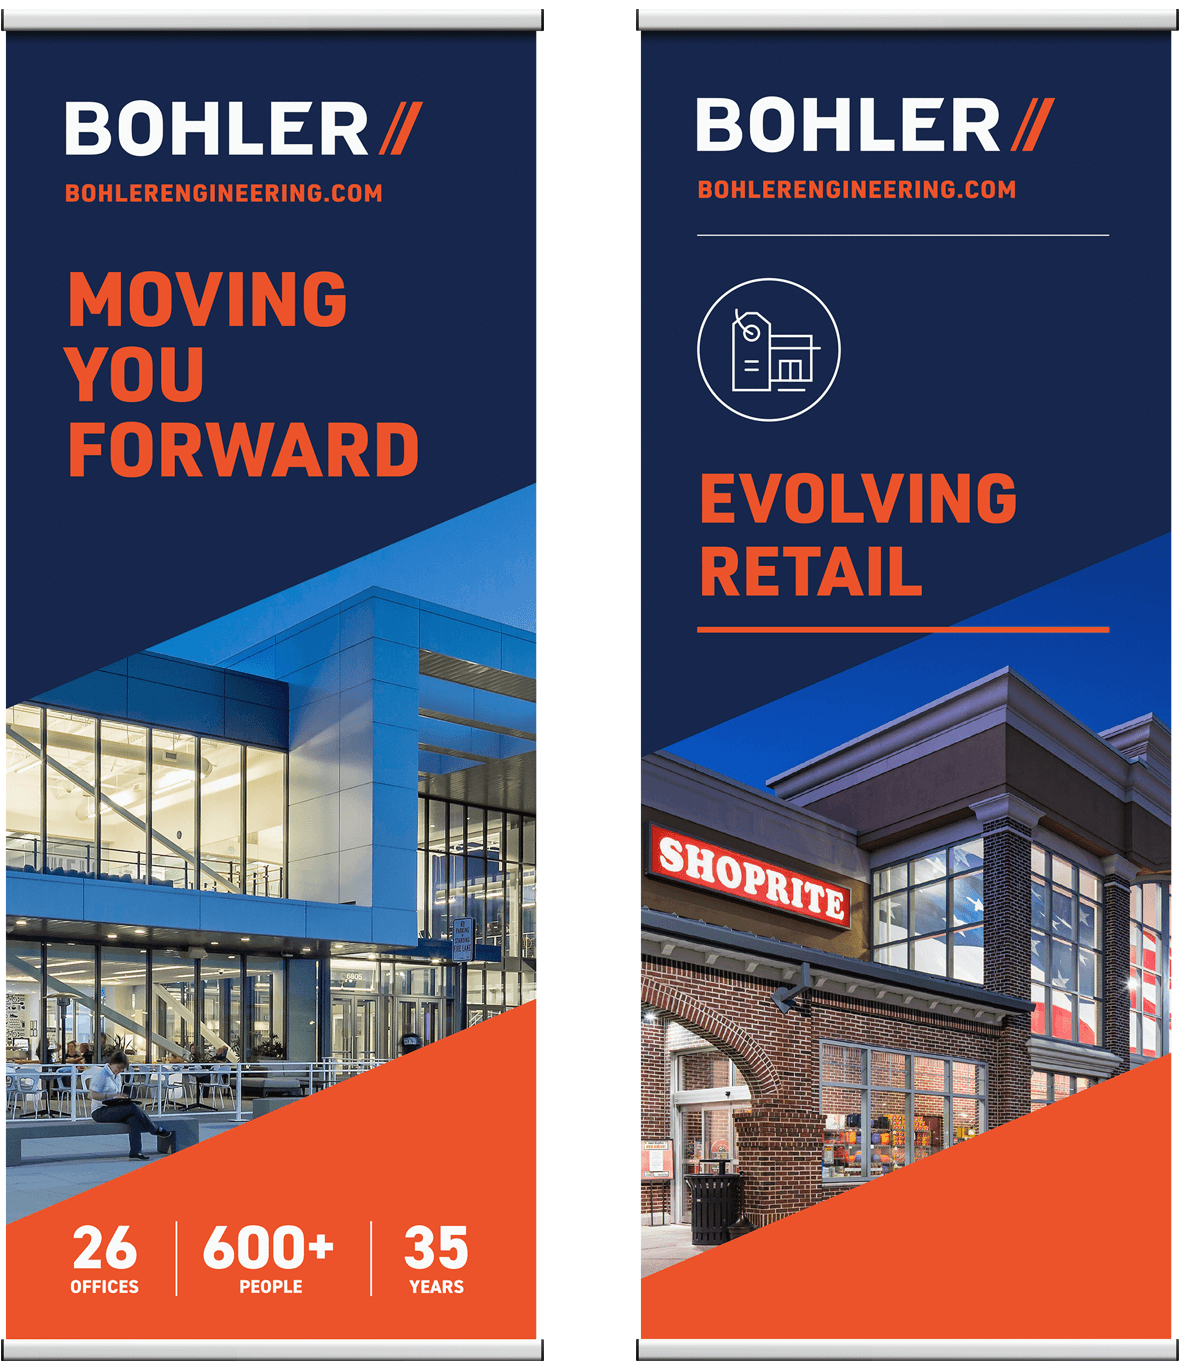 bohler rebrand banners